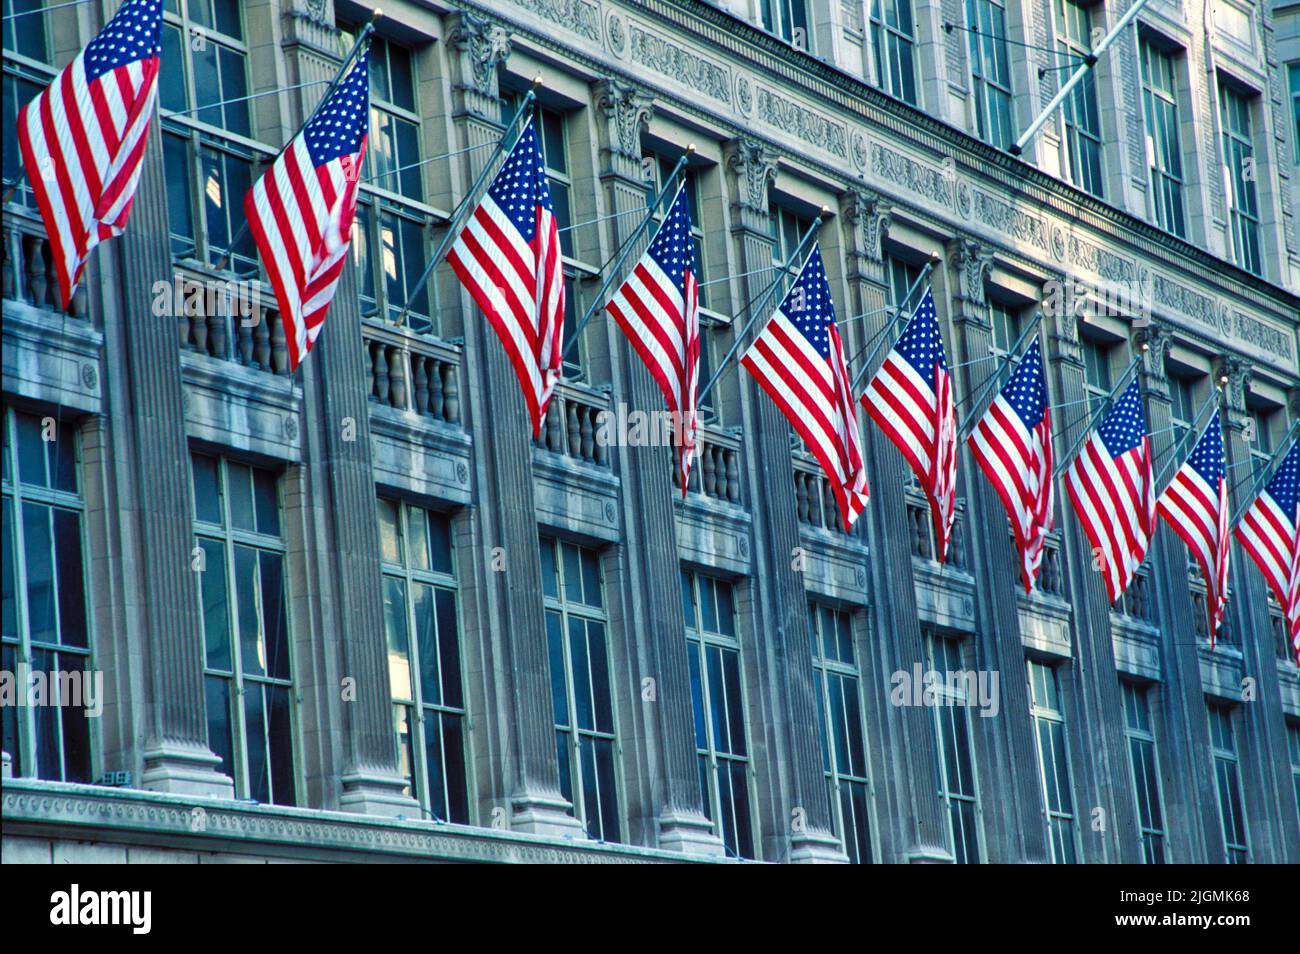 Banderas estadounidenses bordean el exterior de un edificio en la Quinta Avenida, Nueva York, en honor a los muertos en el ataque del World Trade Center el 11 de septiembre de 2001. Foto de stock